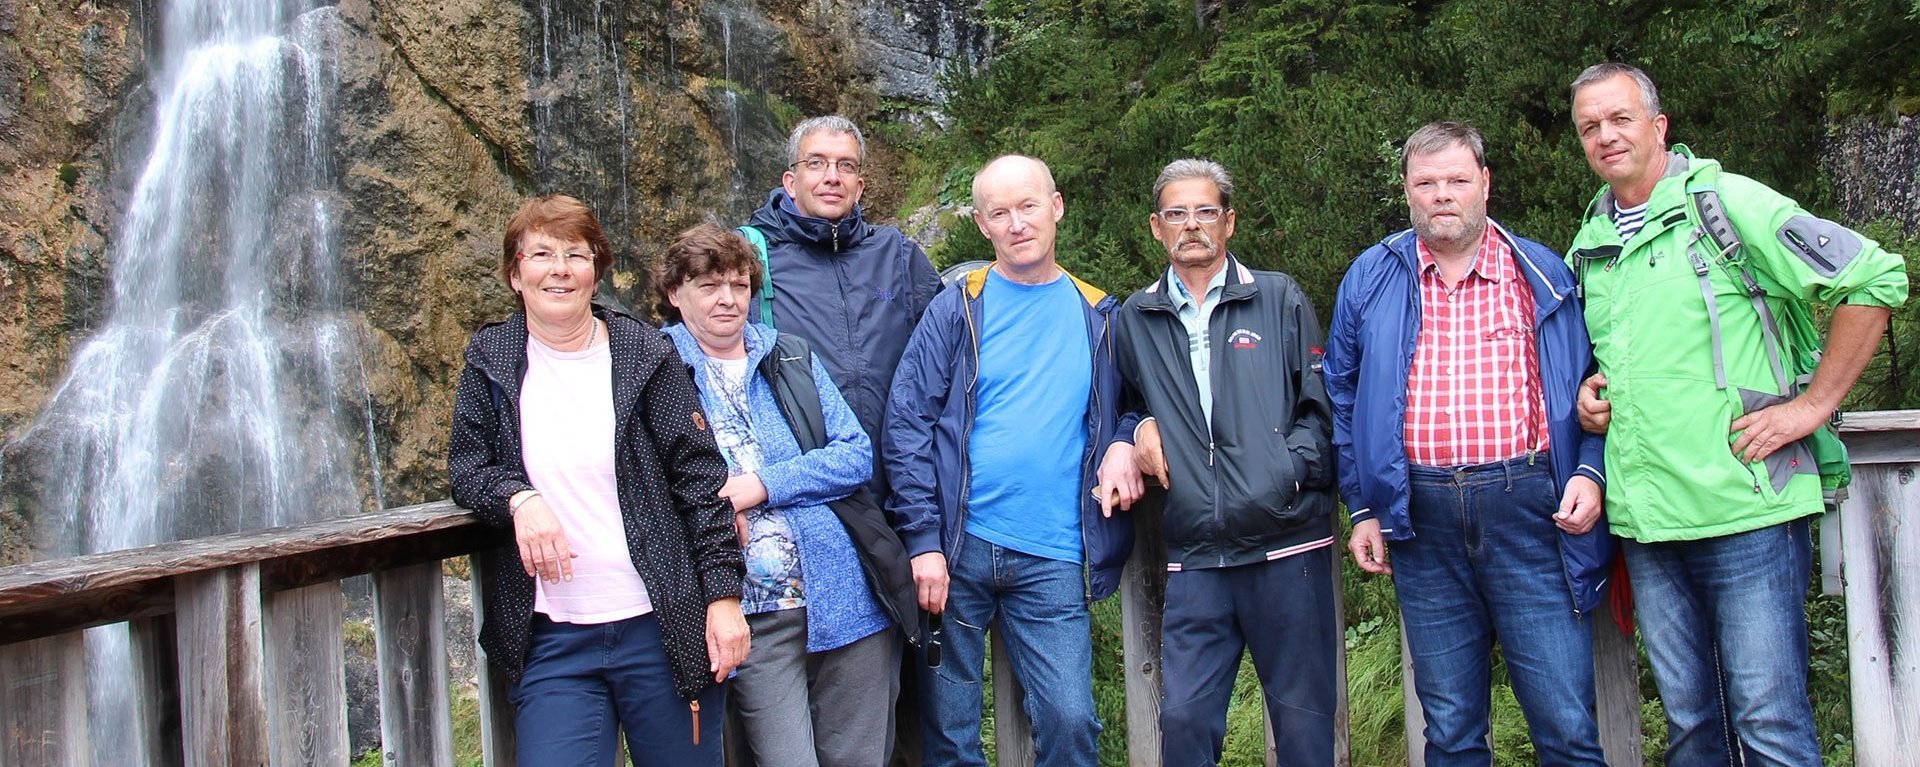 Wanderausflug: Eine Gruppe Frauen und Männer lehnen an einem Geländer - im Hintergrund ein Wasserfall